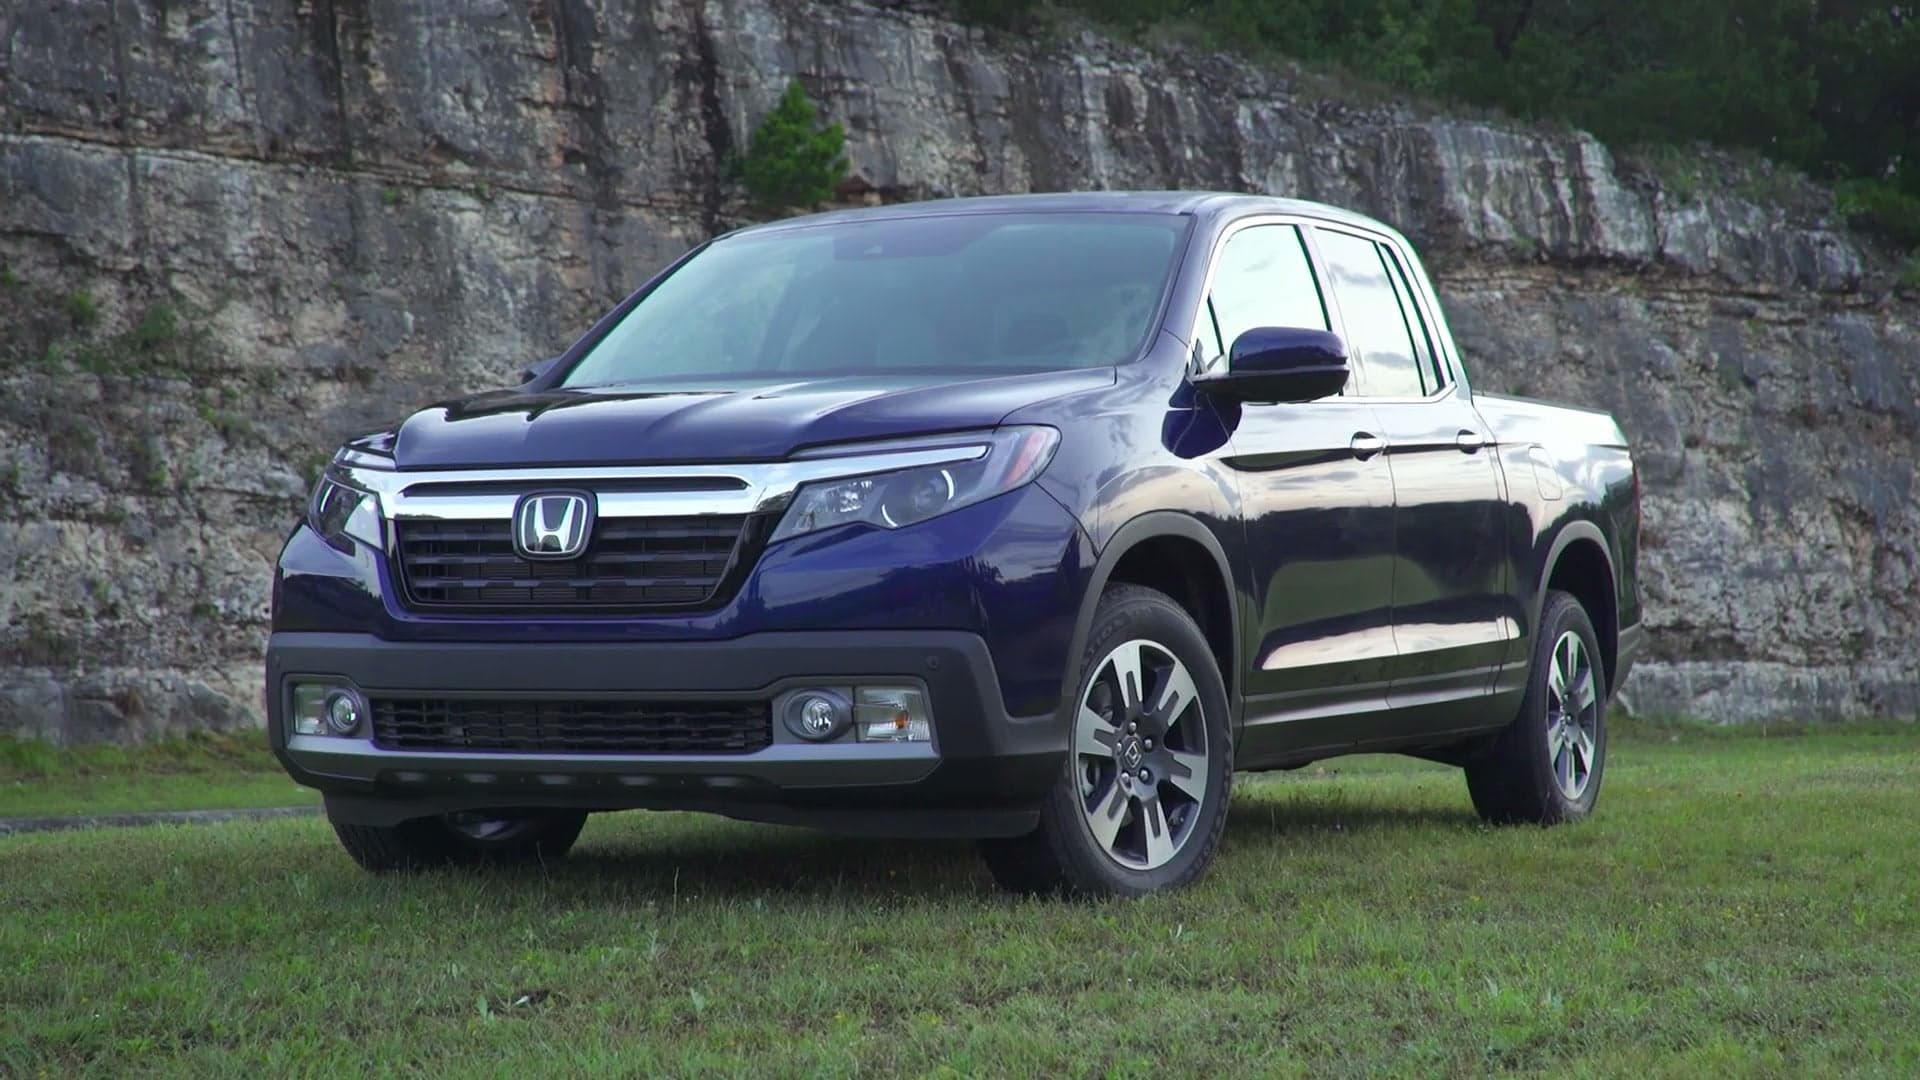 Honda Plans for More Hybrids